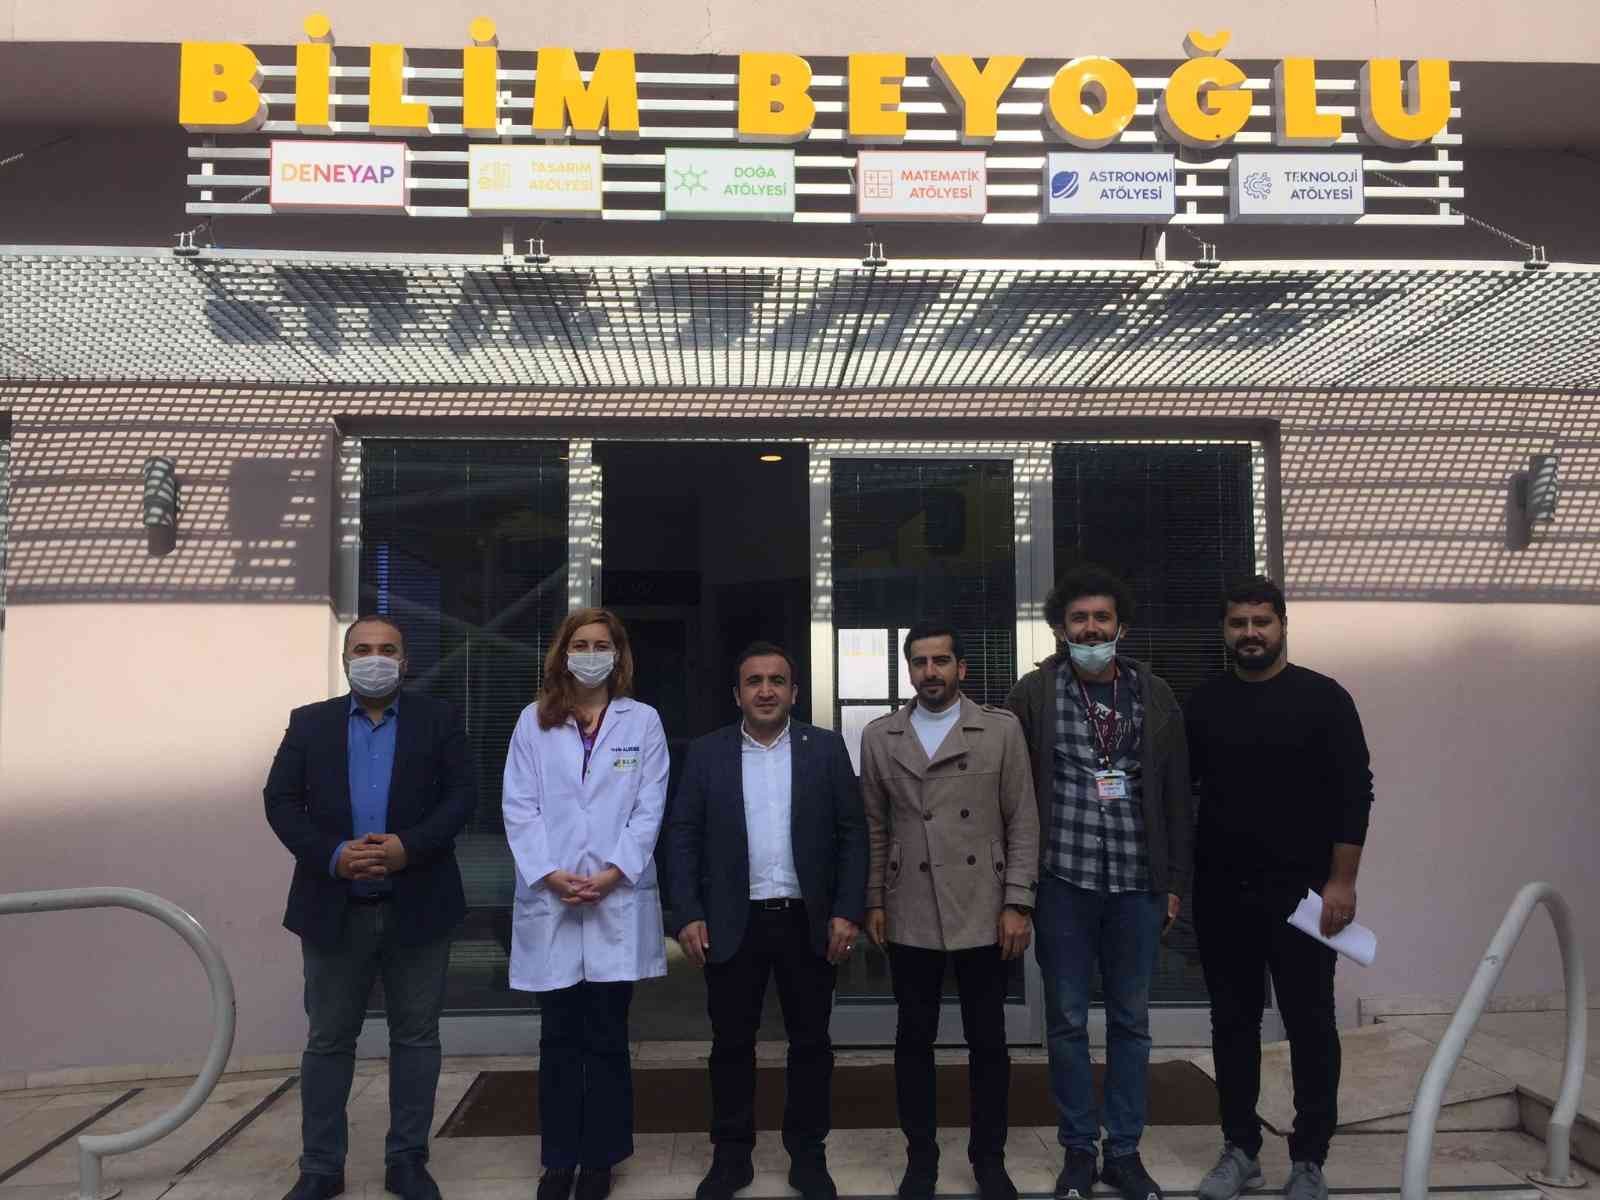 T3 Vakfı’ndan Bilim Beyoğlu’na ziyaret